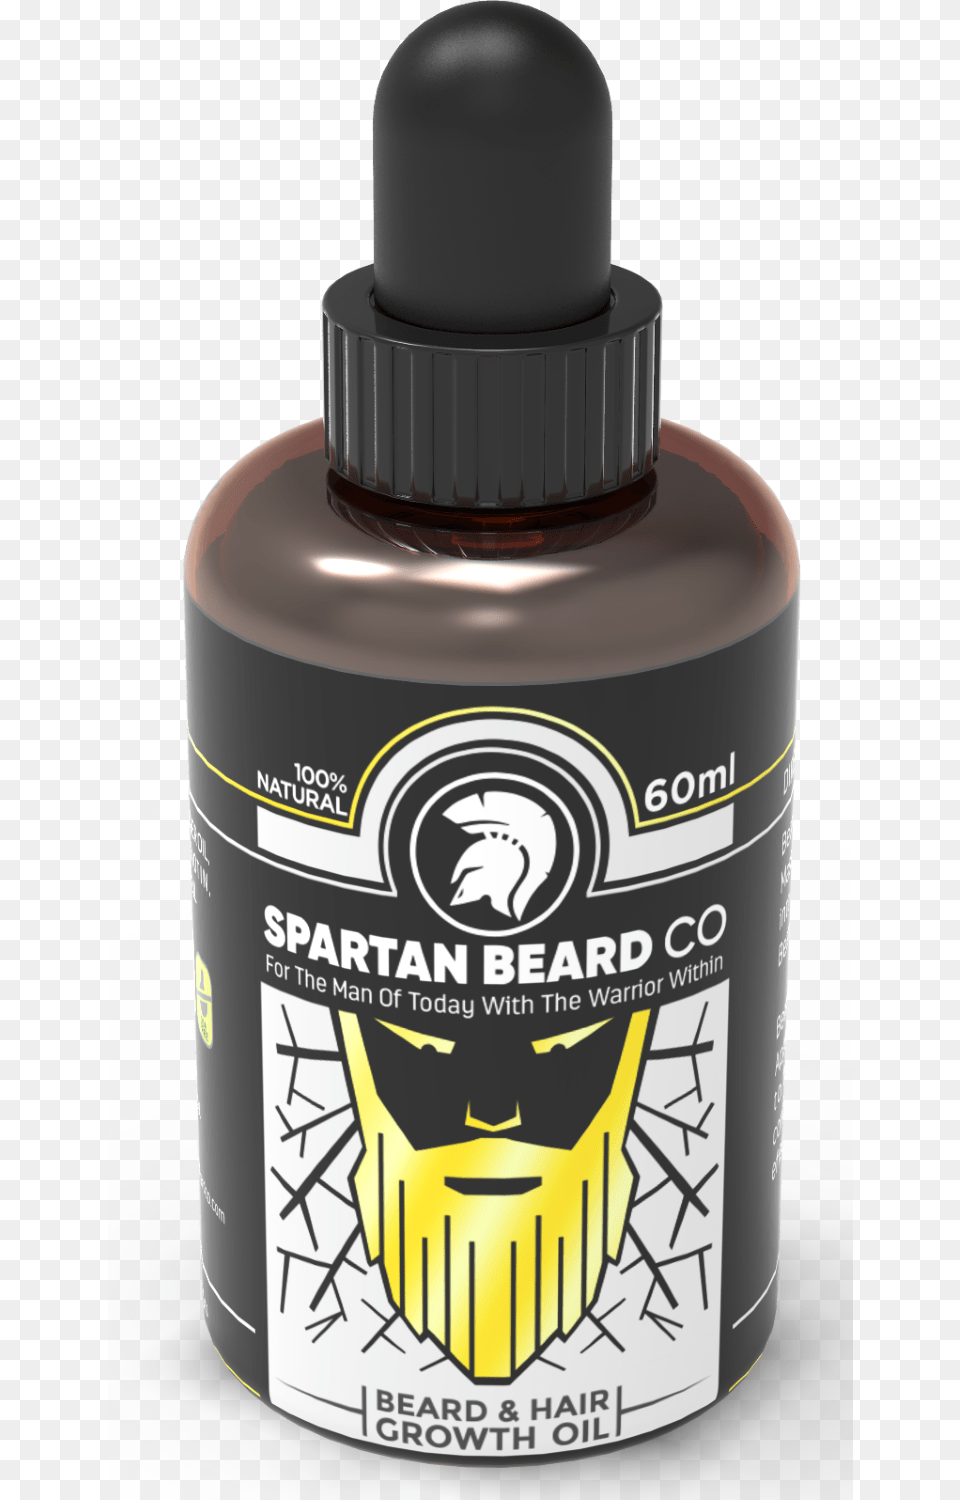 Spartan Beard Co Beard, Bottle, Ink Bottle, Shaker, Can Png Image